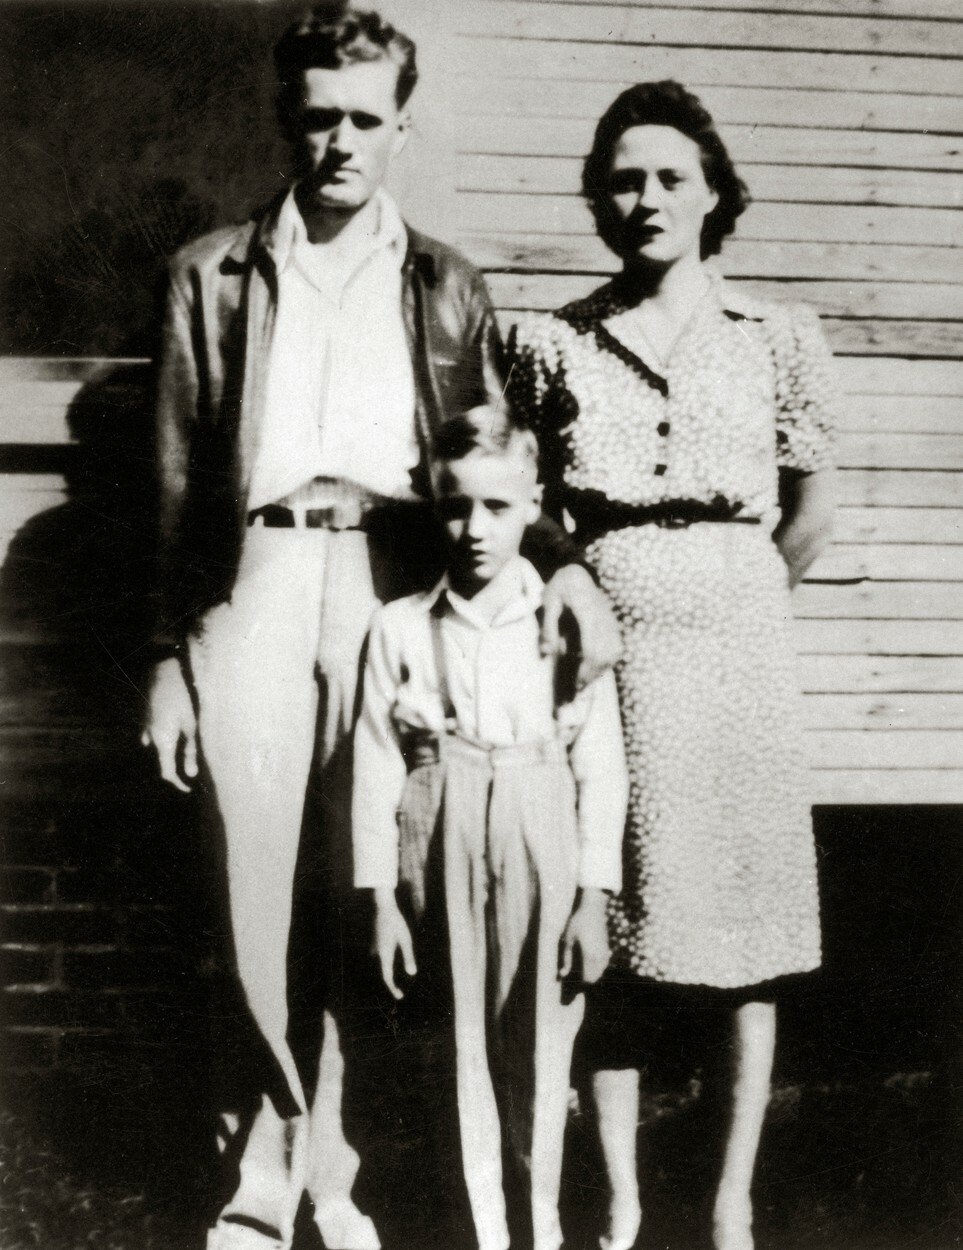 Rodiče Gladys Presley, Vernon Presley a mladý Elvis